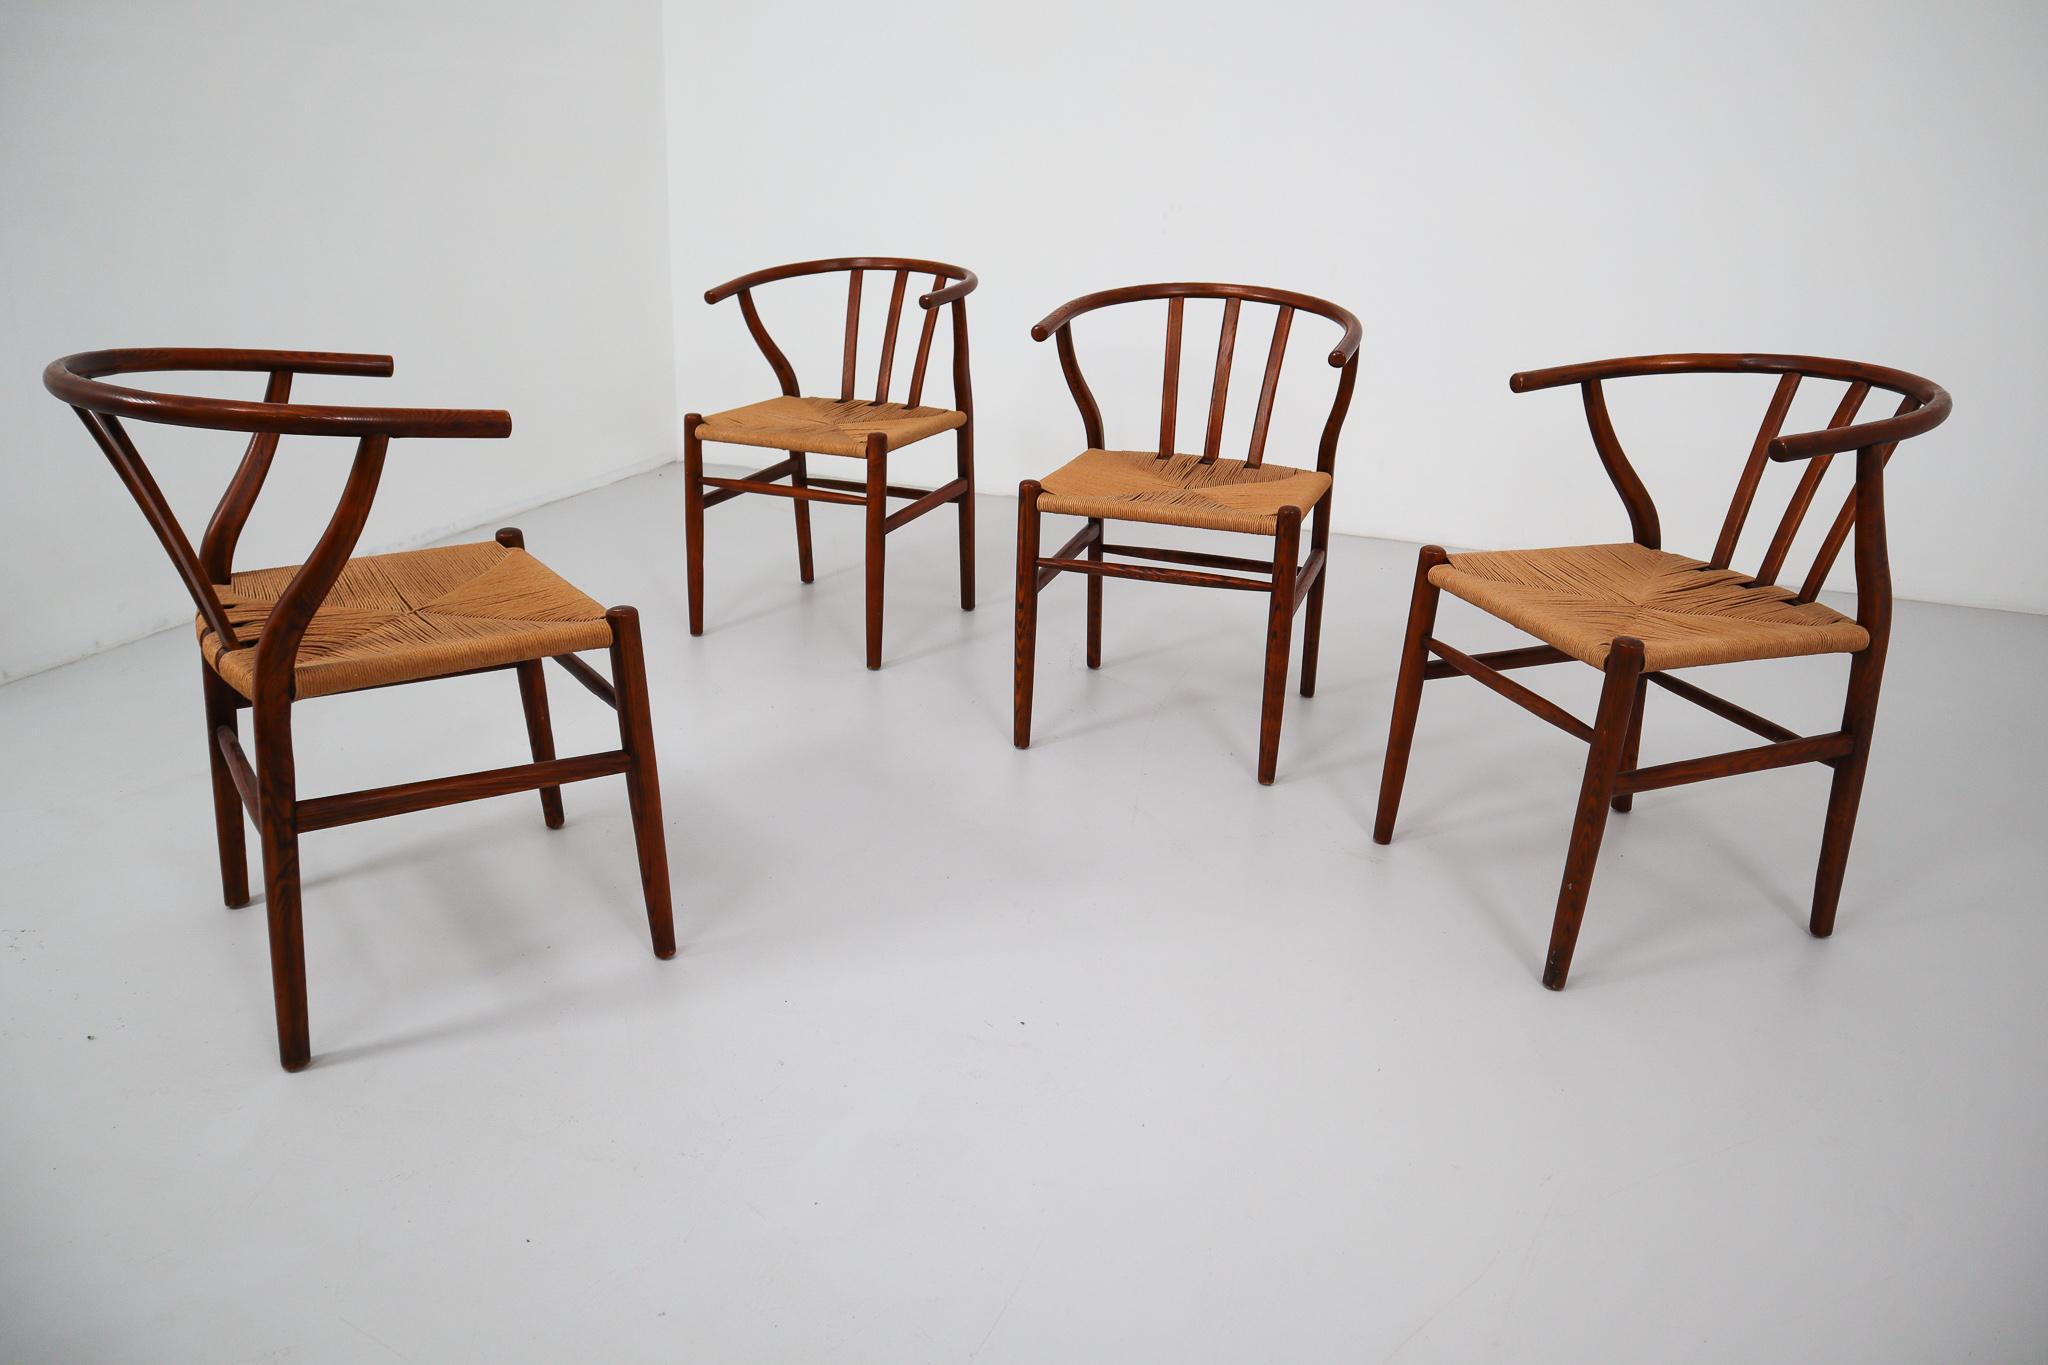 Four Danish Oak Armchairs with Handwoven Paper cord Seats, 1960s (Skandinavische Moderne)